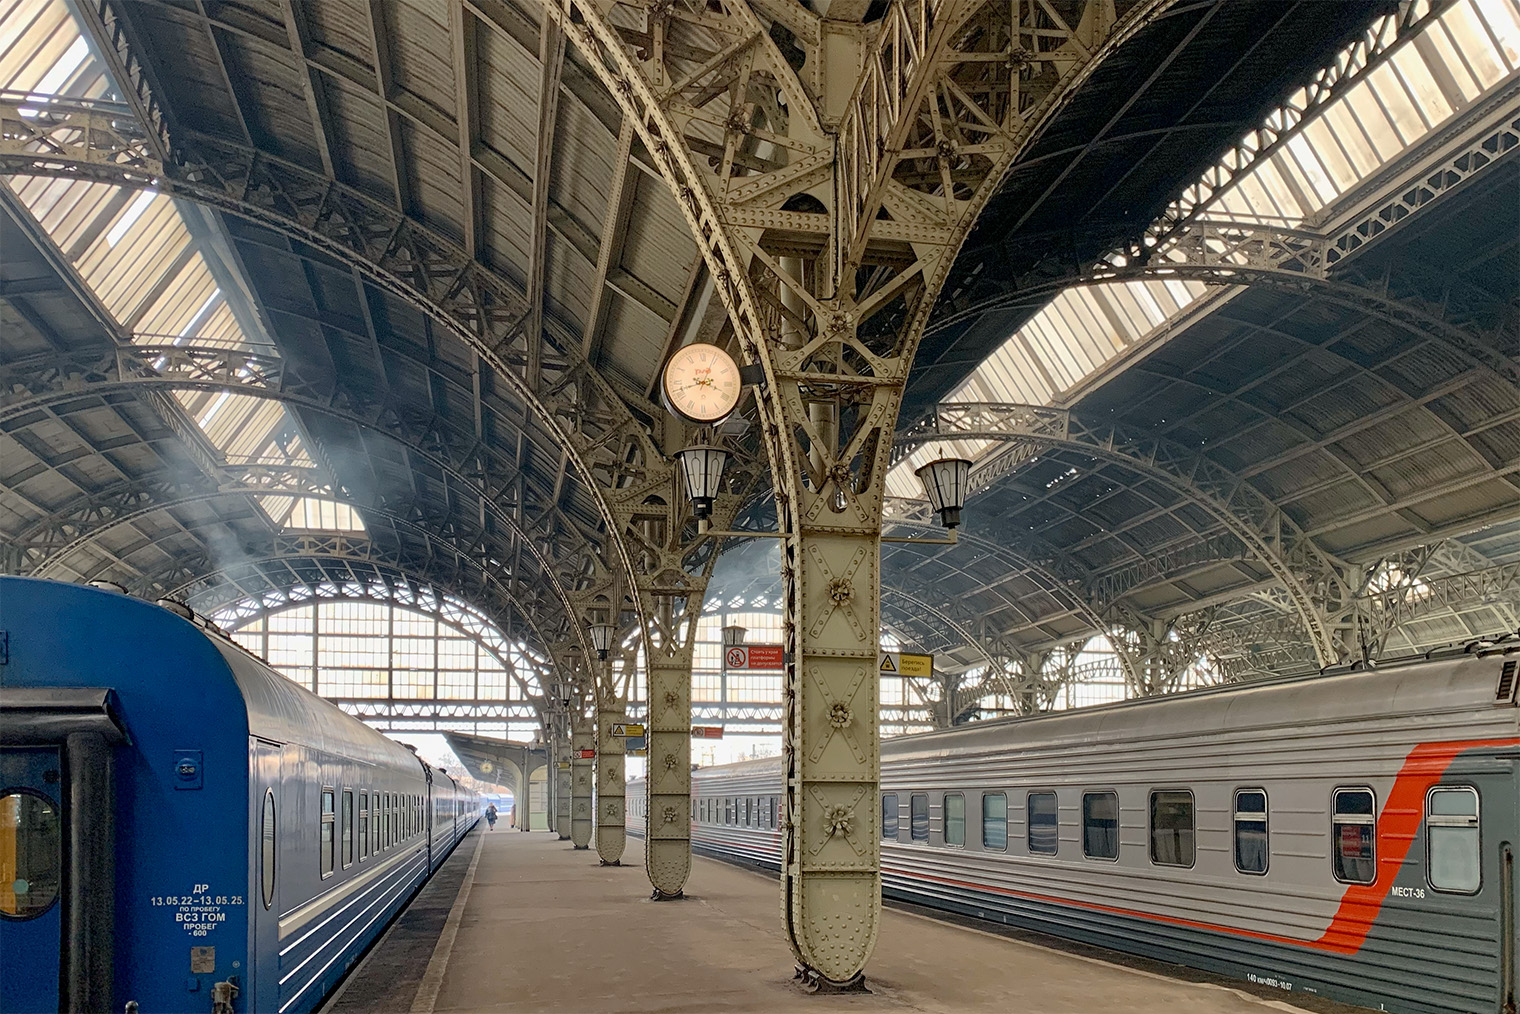 Витебский вокзал — старейший в России и, на мой взгляд, самый красивый в Петербурге. Отсюда в 1837 году начали ходить поезда по первой в стране железной дороге. Сейчас на вокзал прибывают пригородные электрички Витебского направления, например из Пушкина и Павловска